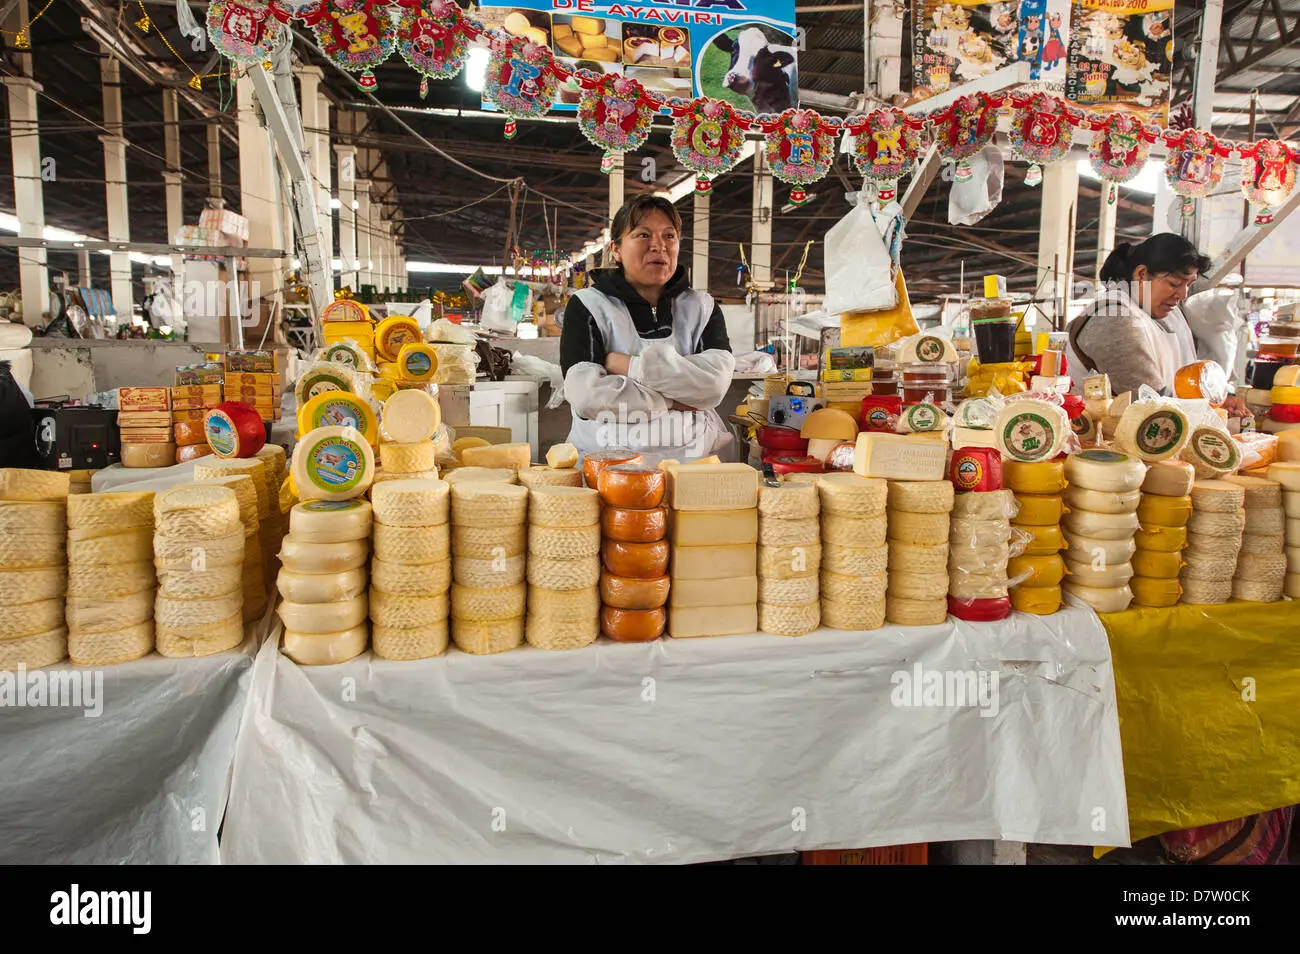 puestos de venta ambulante de quesos - Qué tipo de vendedor es conocido como ambulante